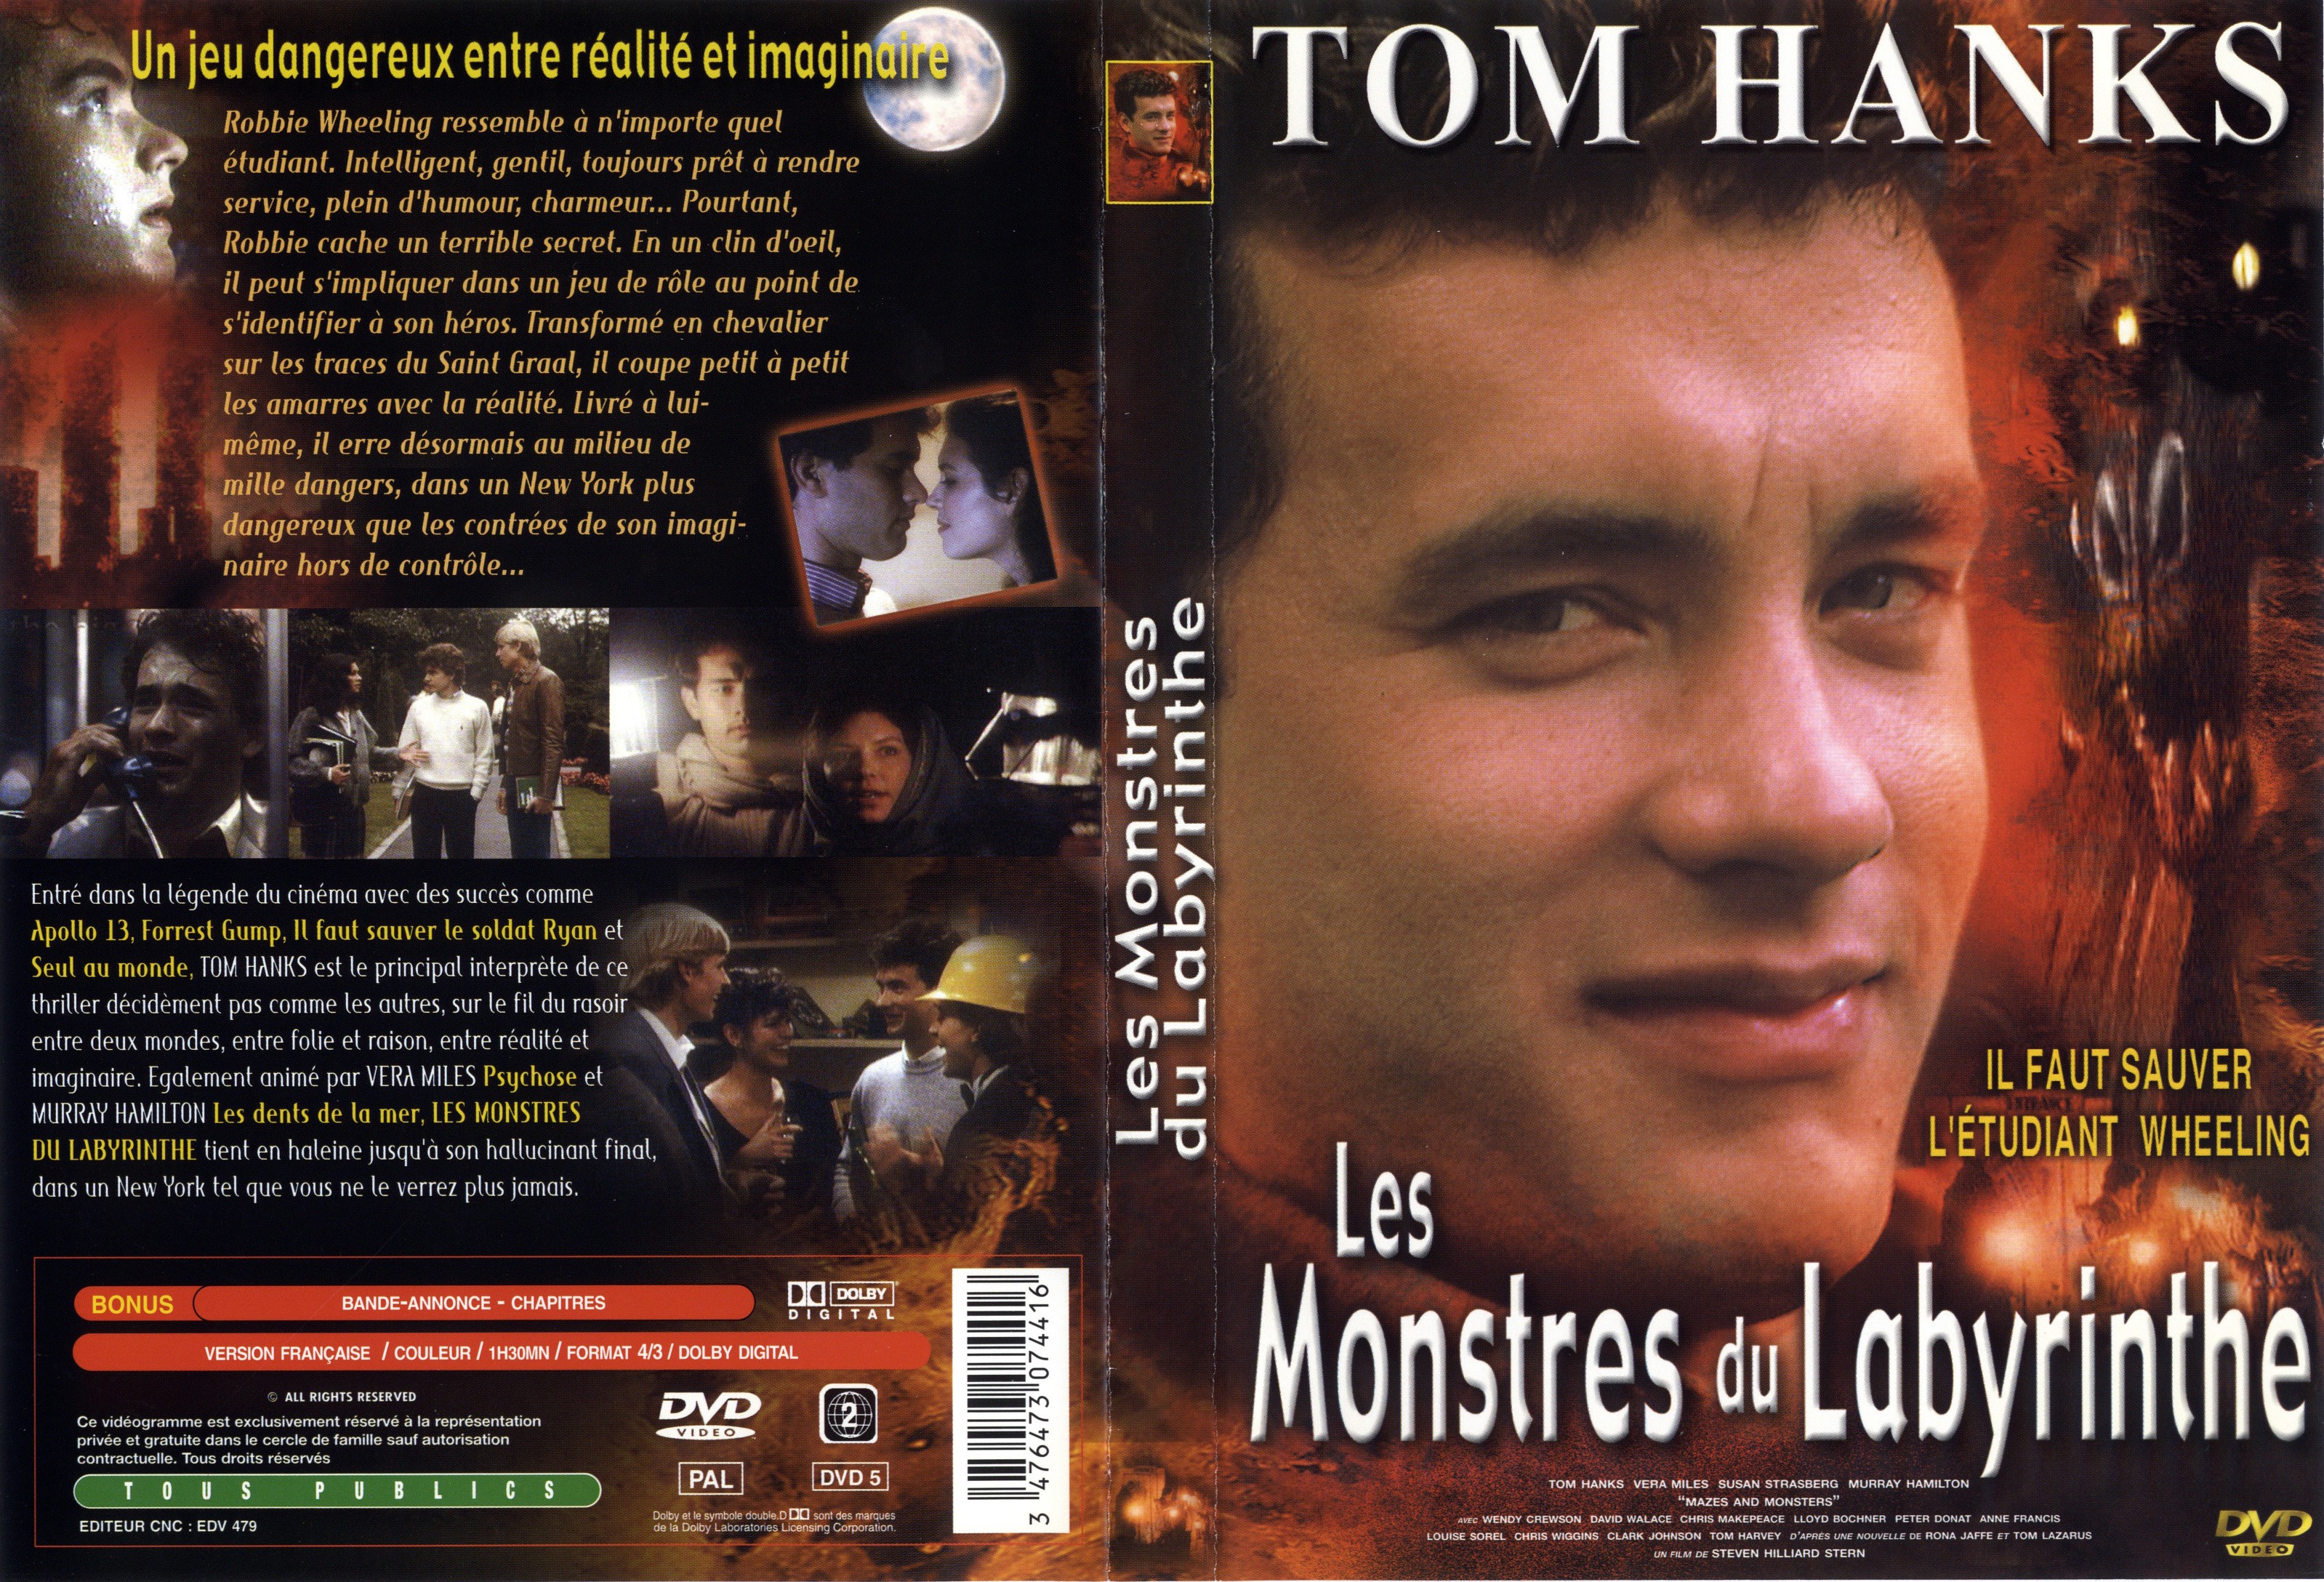 Jaquette DVD Les monstres du labyrinthe